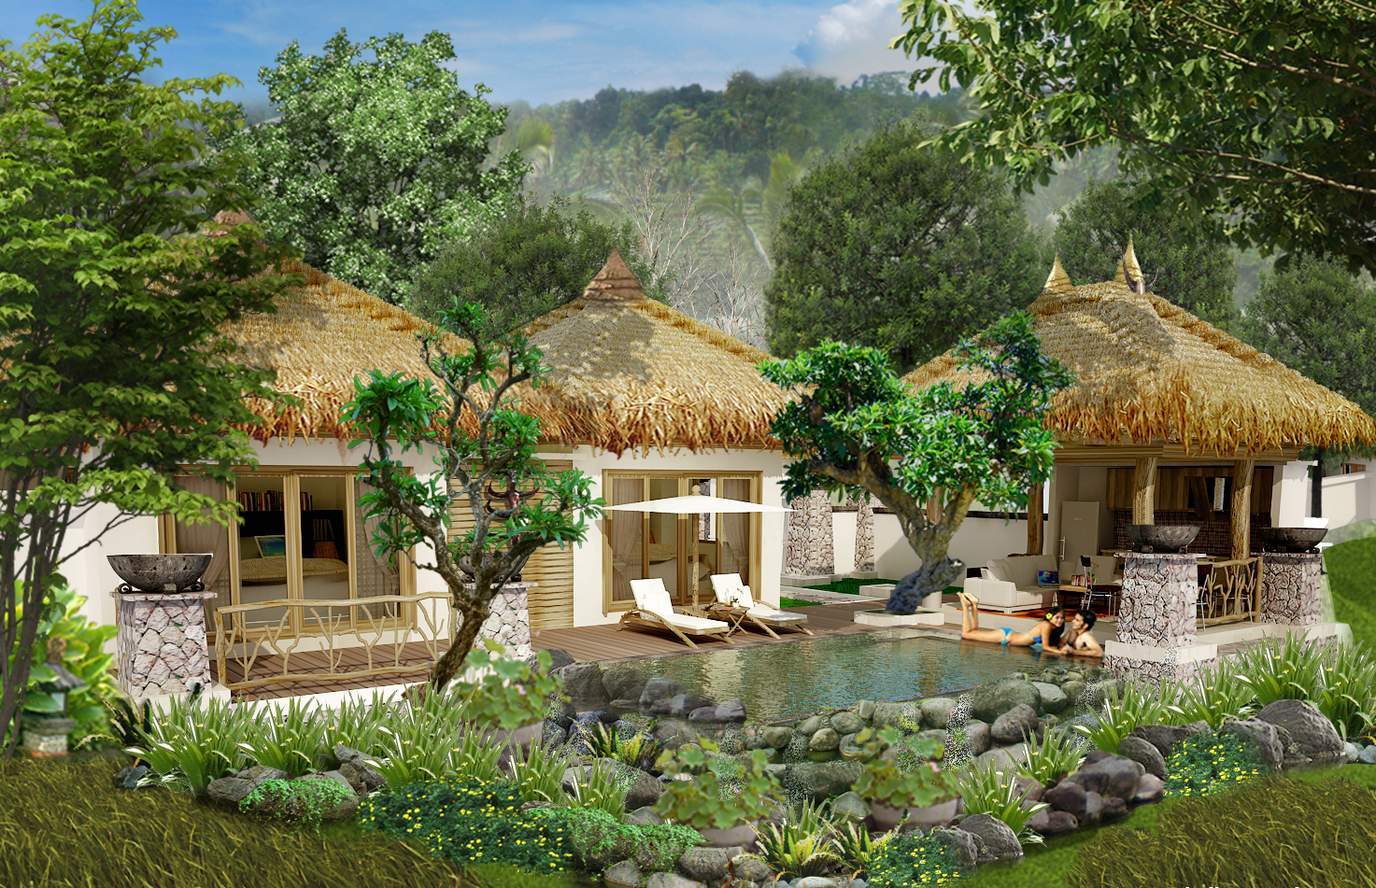 TAMAN SAFARI RESORT - Made Dharmendra | Bali Concept Design